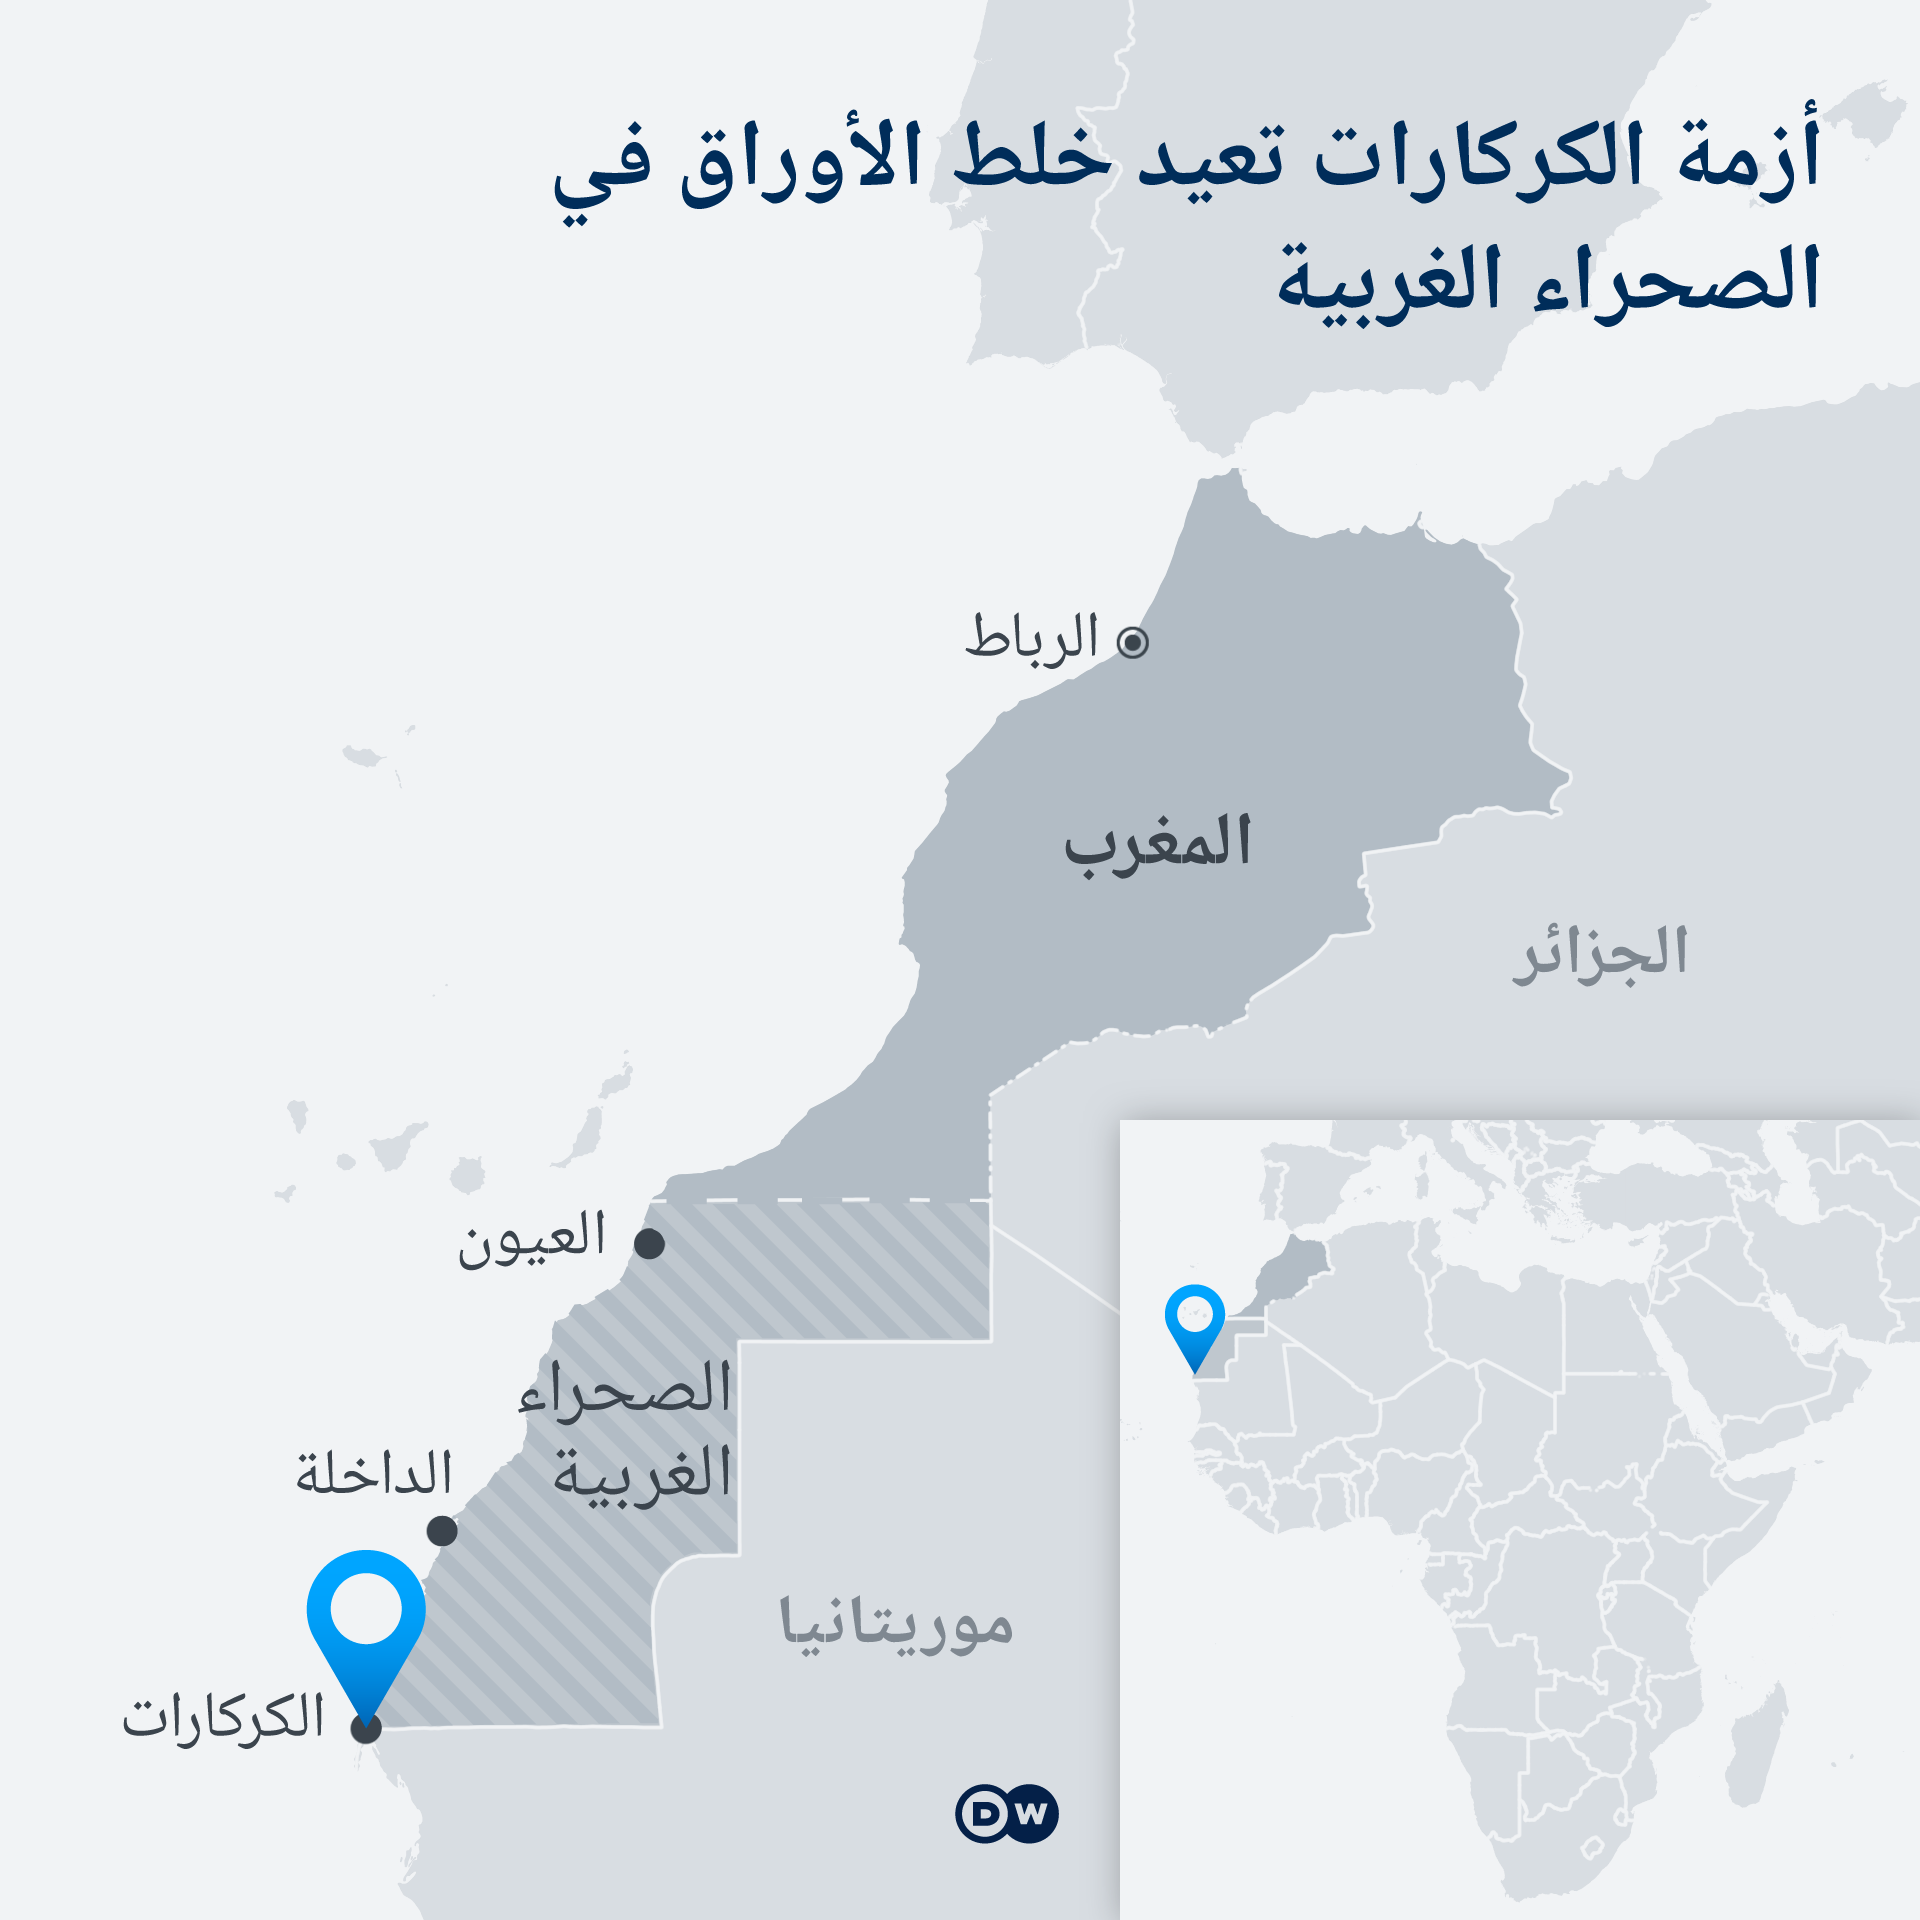 خريطة: معبر الكركرات - الصحراء الغربية - المغرب - الجزائر - إفريقيا.